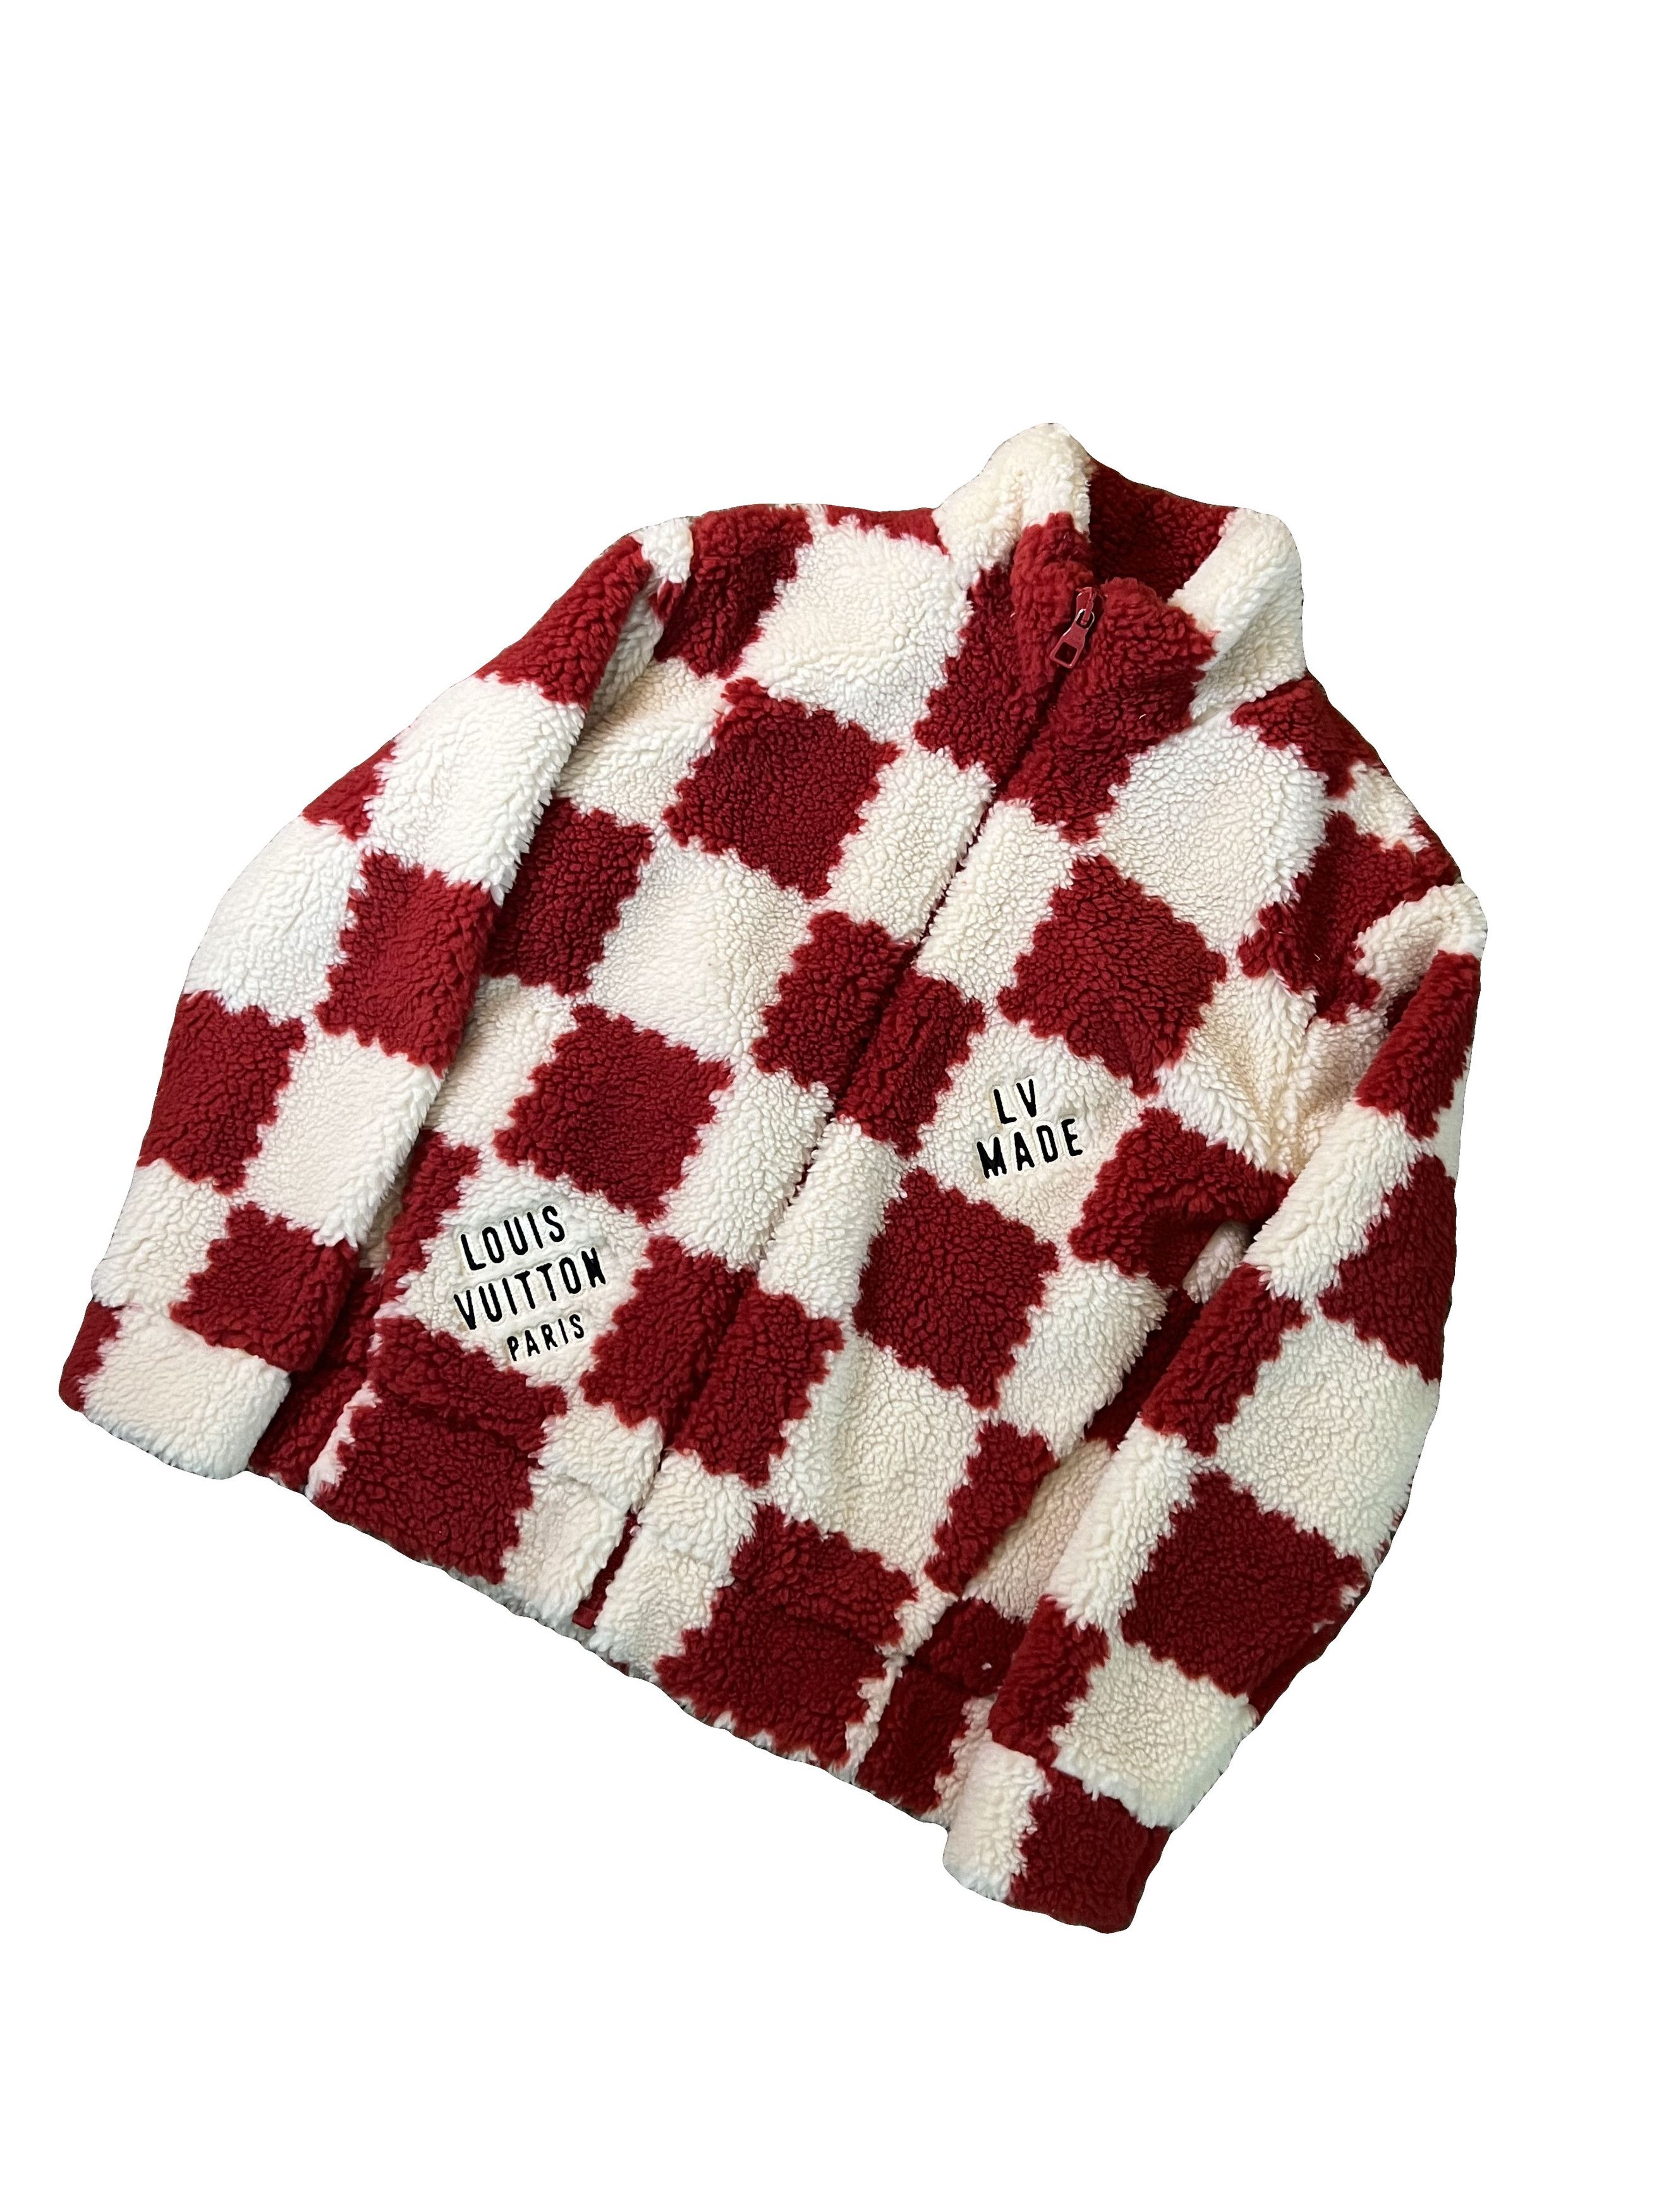 Louis Vuitton Louis Vuitton Nigo Red Checkered Fleece Jacket Size US M / EU 48-50 / 2 - 2 Preview